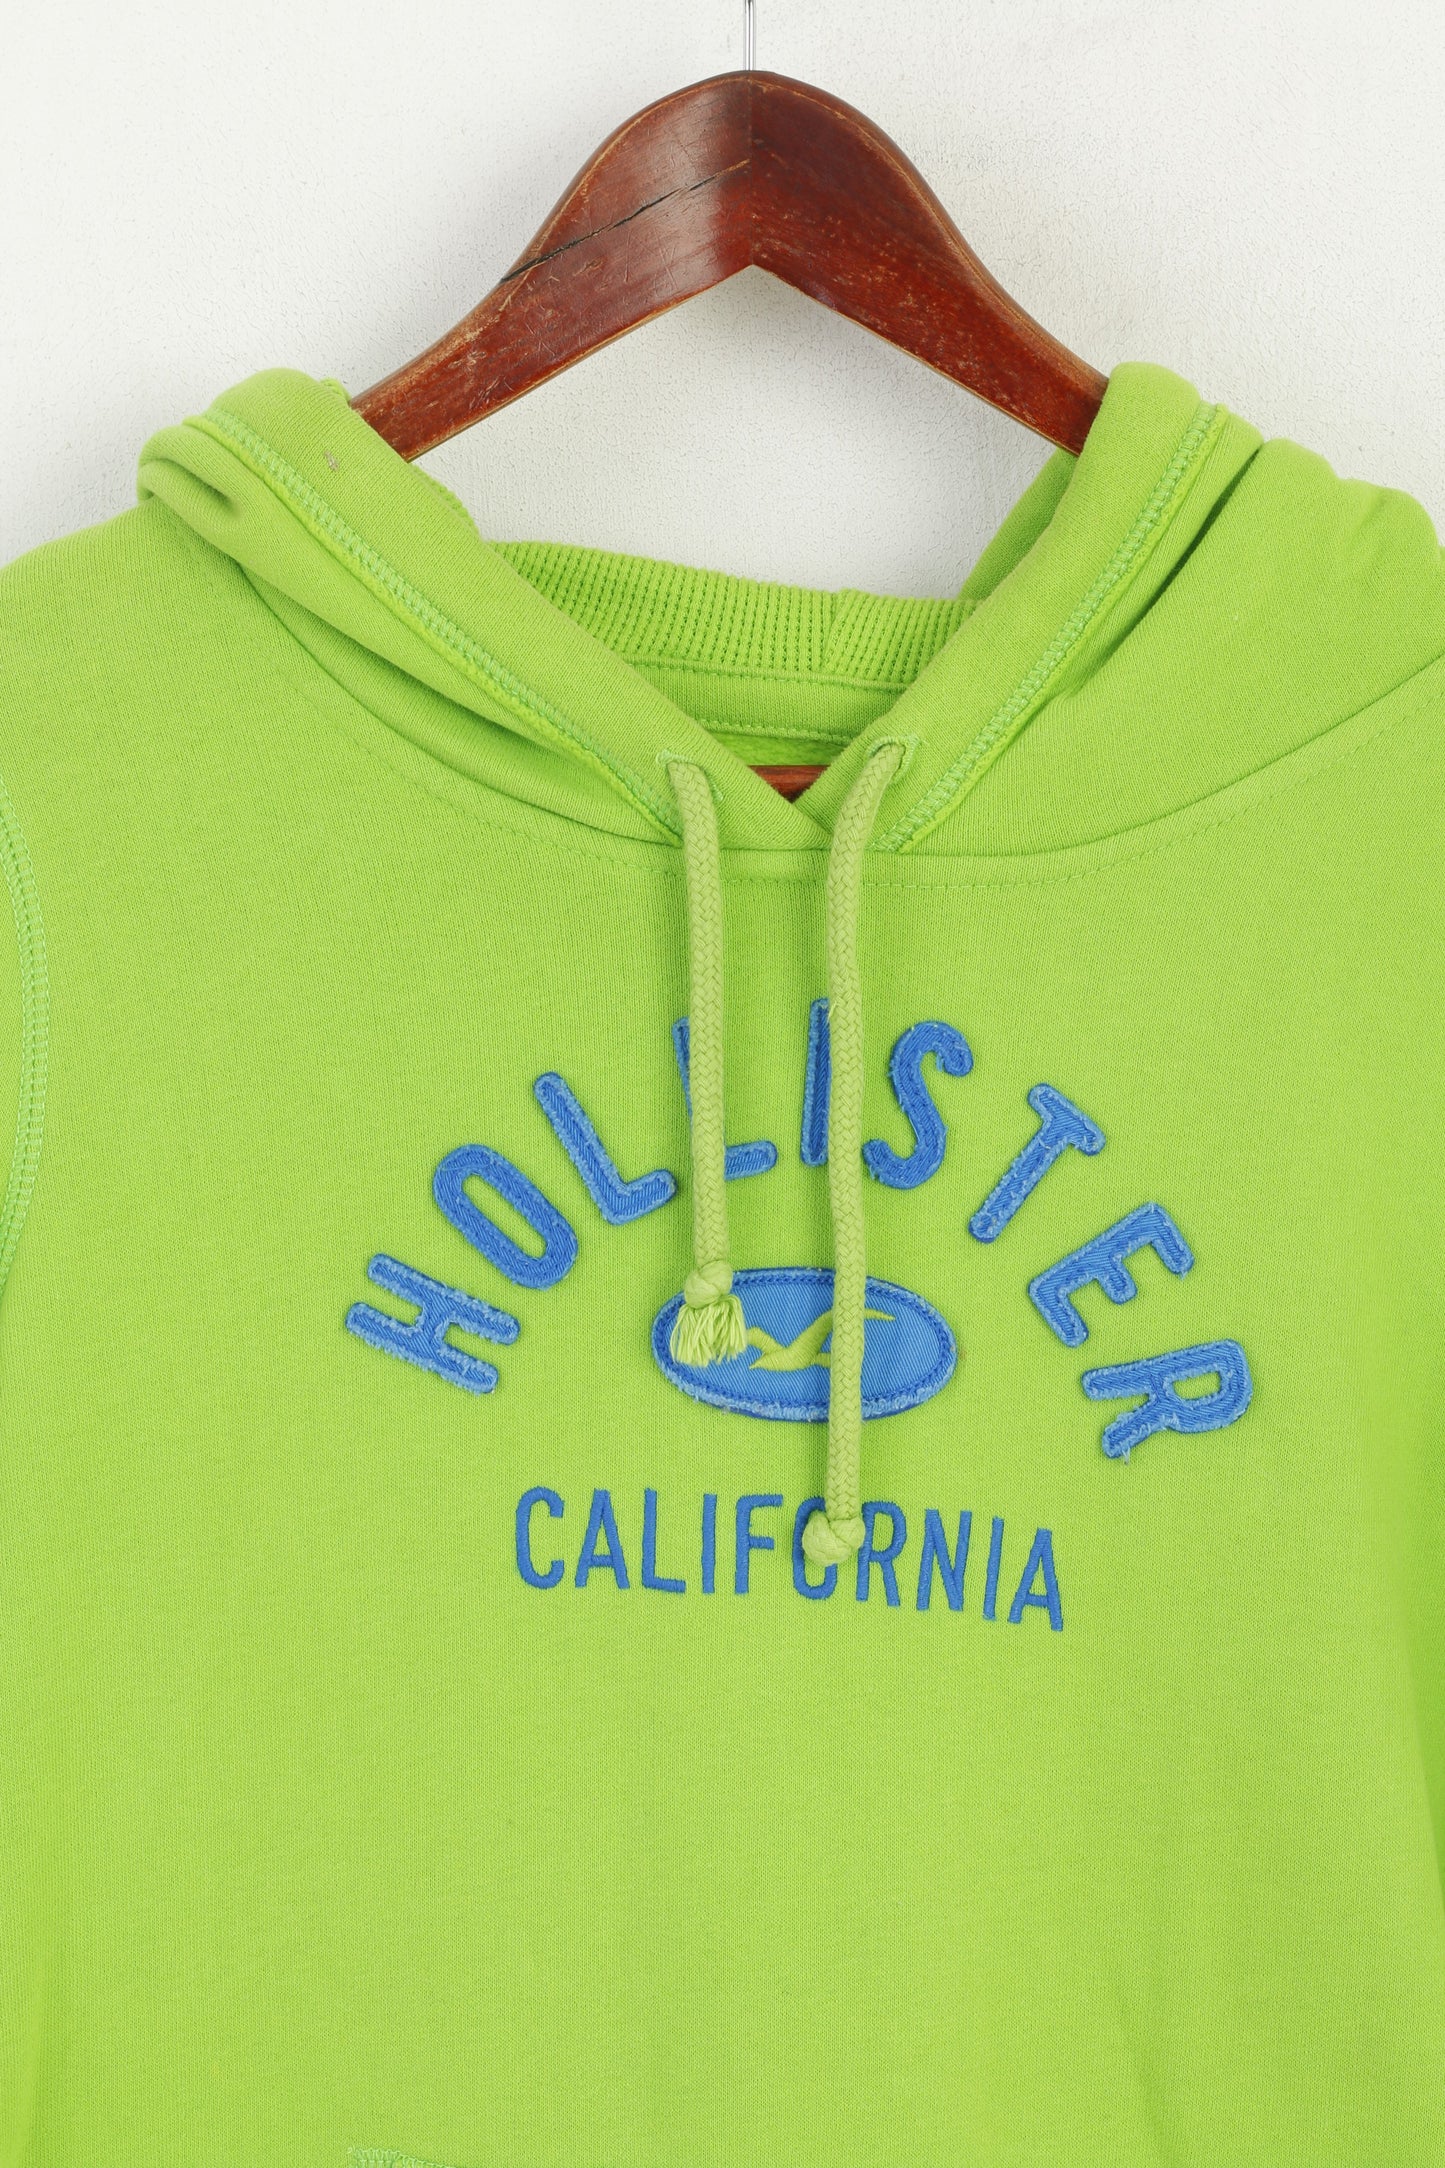 Hollister California Women M (S) Sweatshirt Neon Green Hoodie Cotton Top